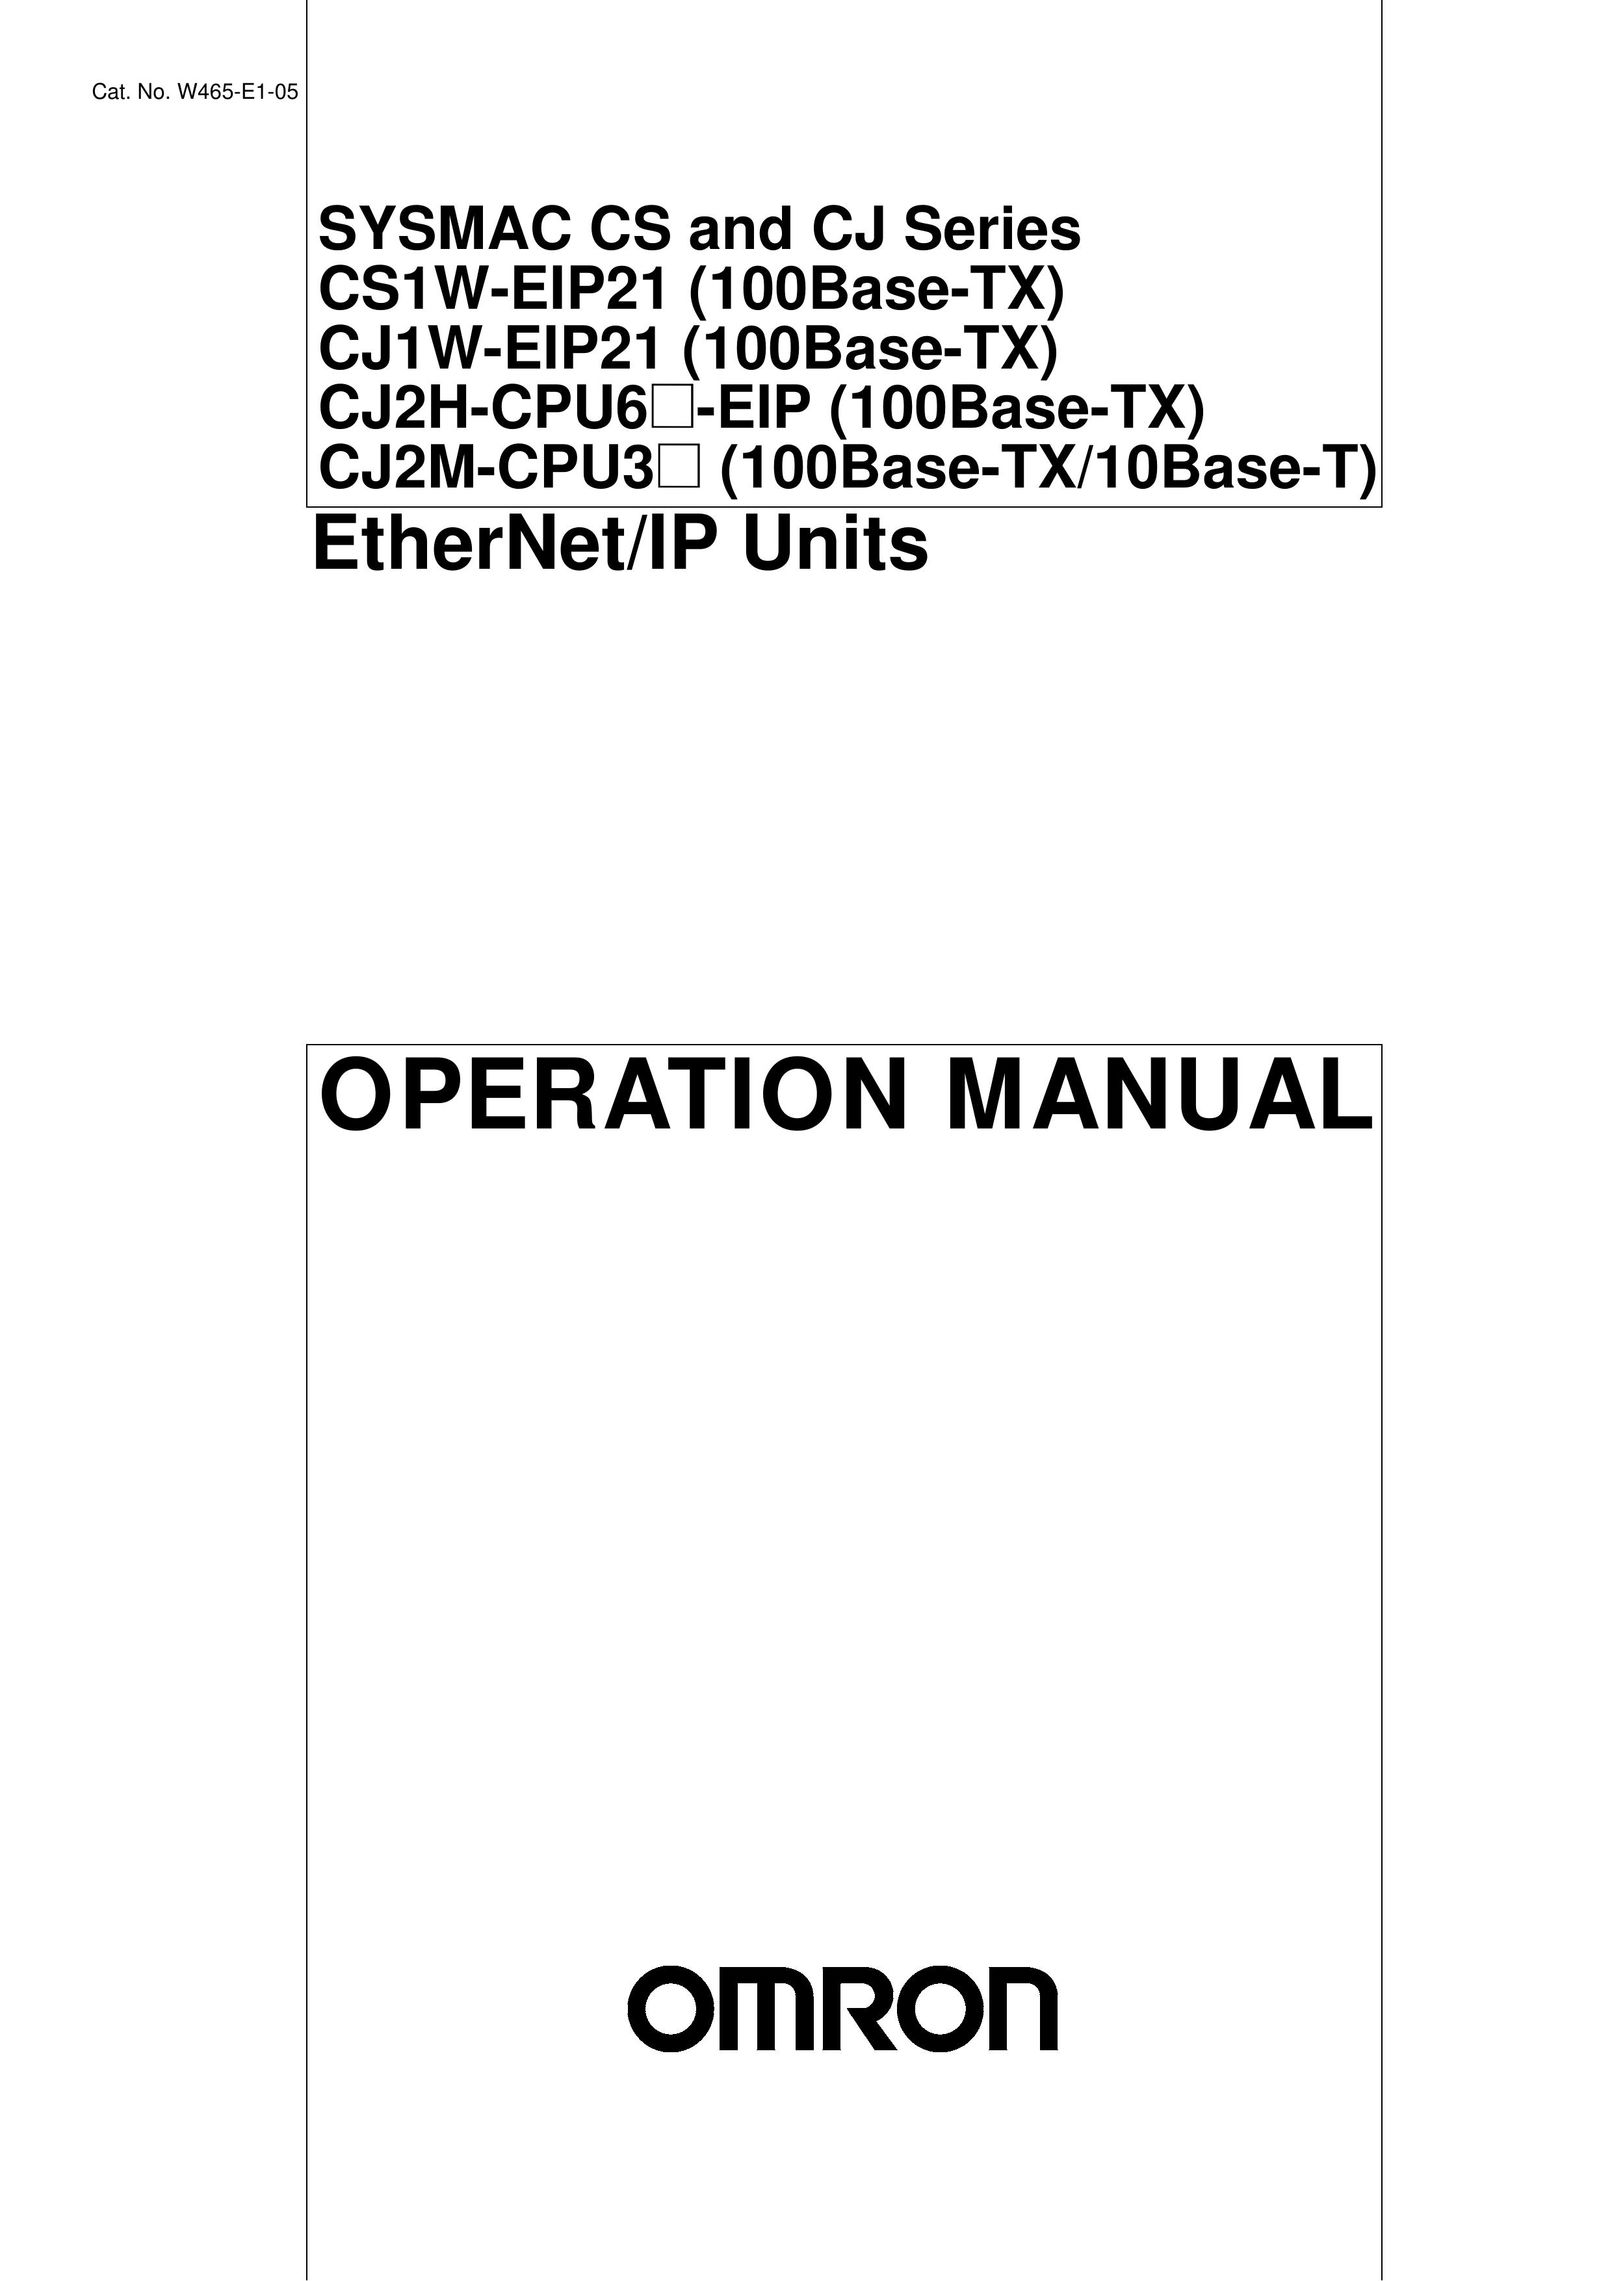 Omron CJ1W-EIP21 Network Card User Manual